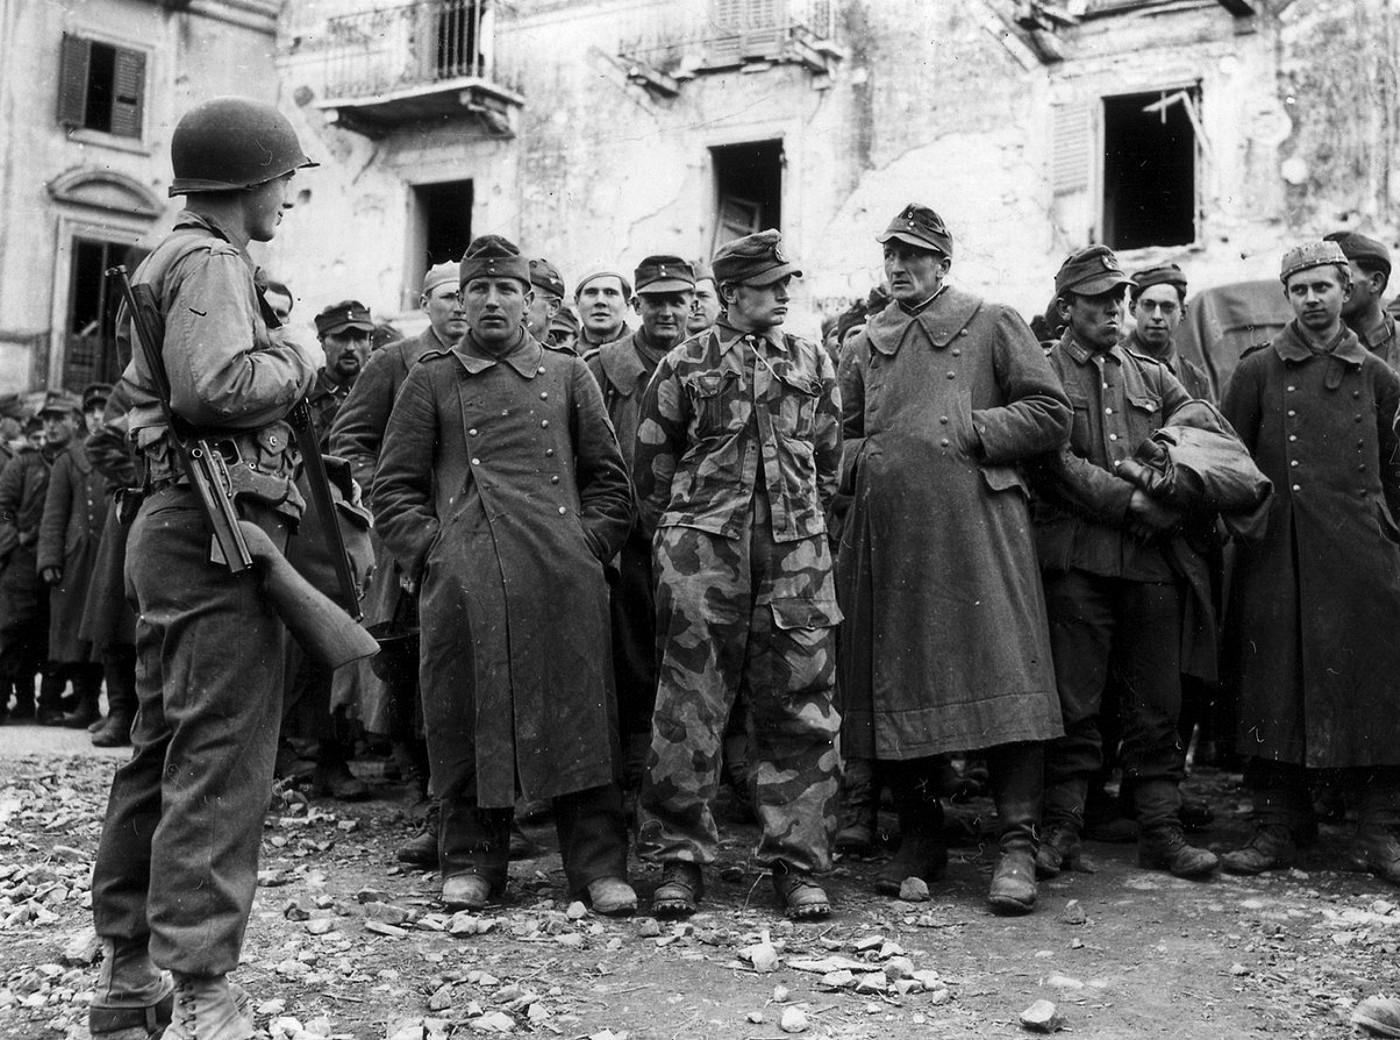 Сколько год был в плену. Итальянские солдаты 1943 год плен. Пленные немецкие солдаты вторая мировая 1943. Немецкие военнопленные 1945. Итальянская кампания 1943-1945.